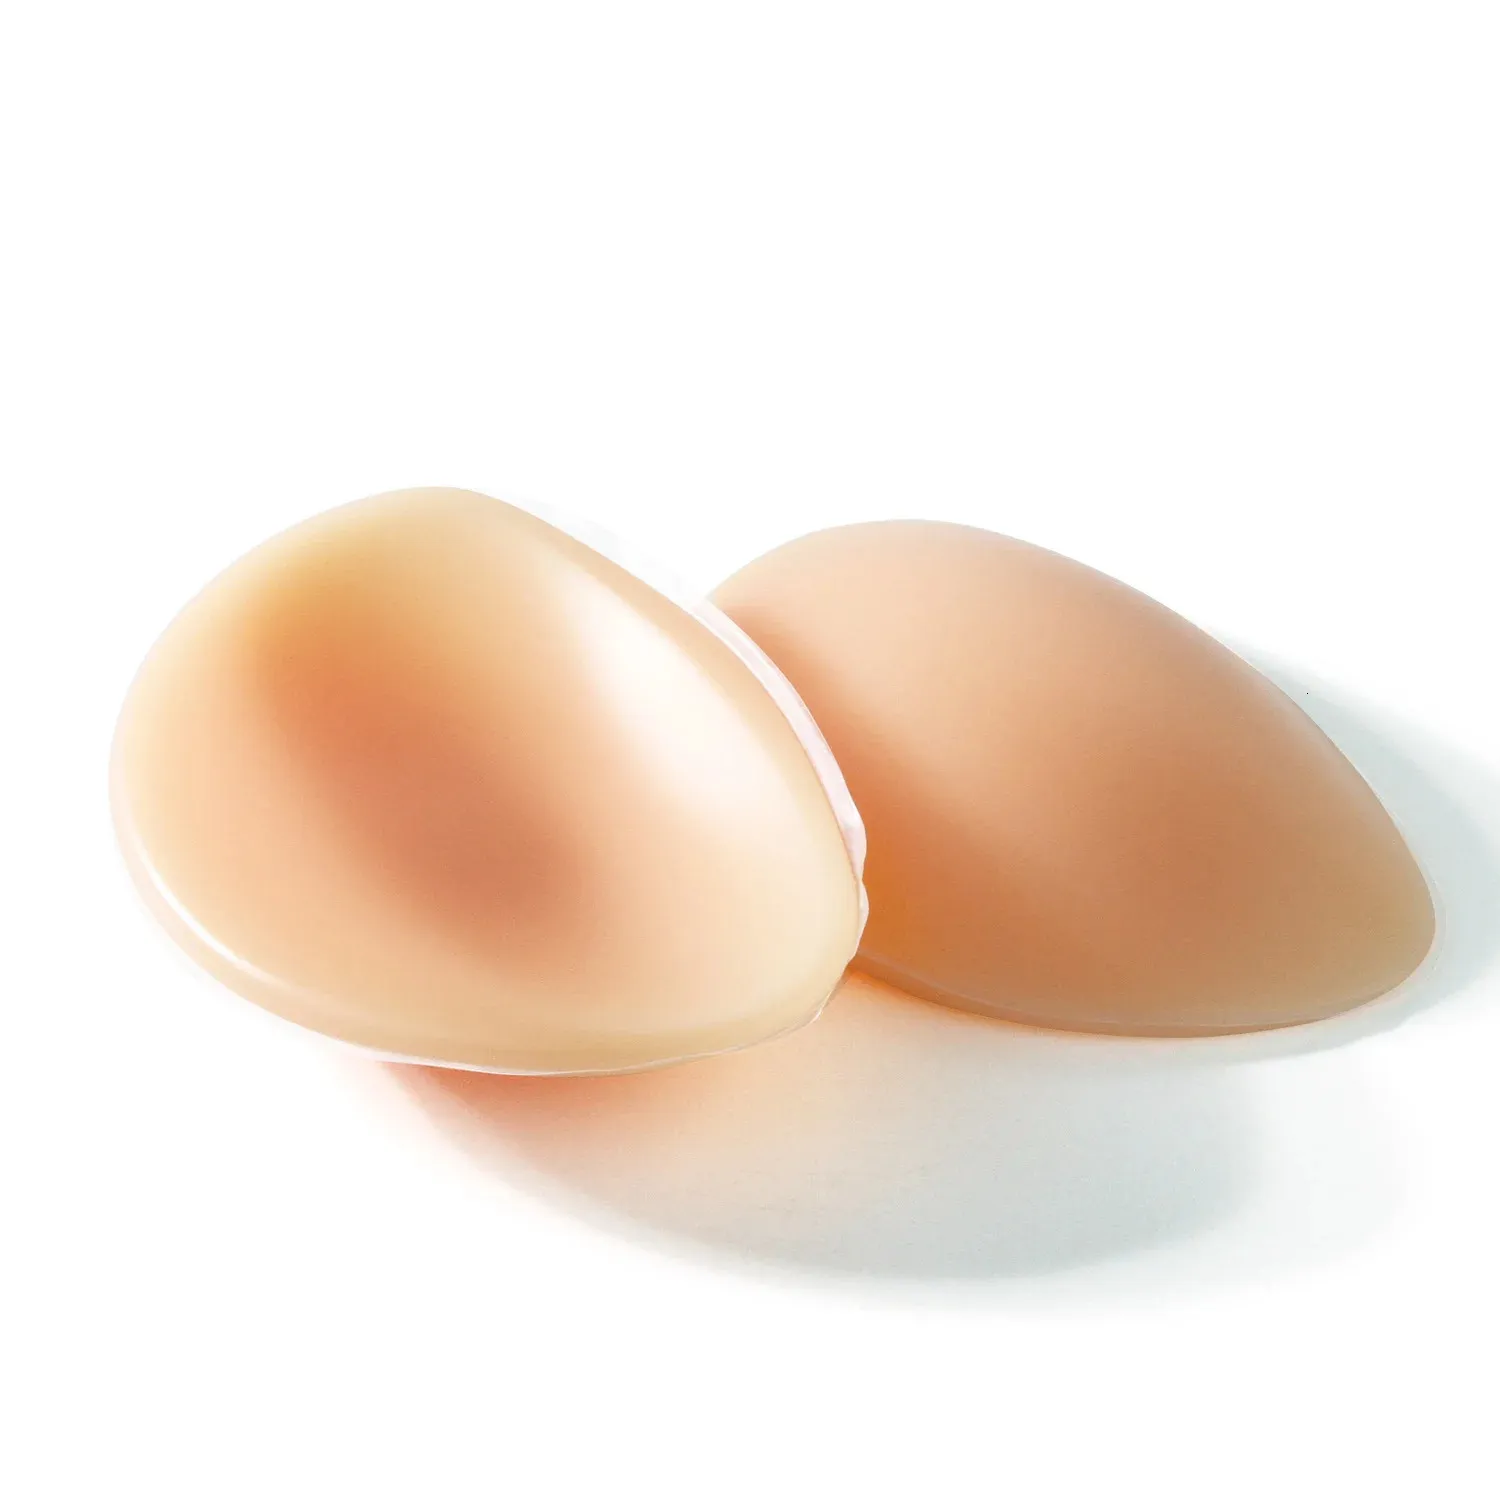 Design Calchi in silicone insert pad padigni per il miglioramento del seno insert pad per le donne che sono sexy bellezza 240426